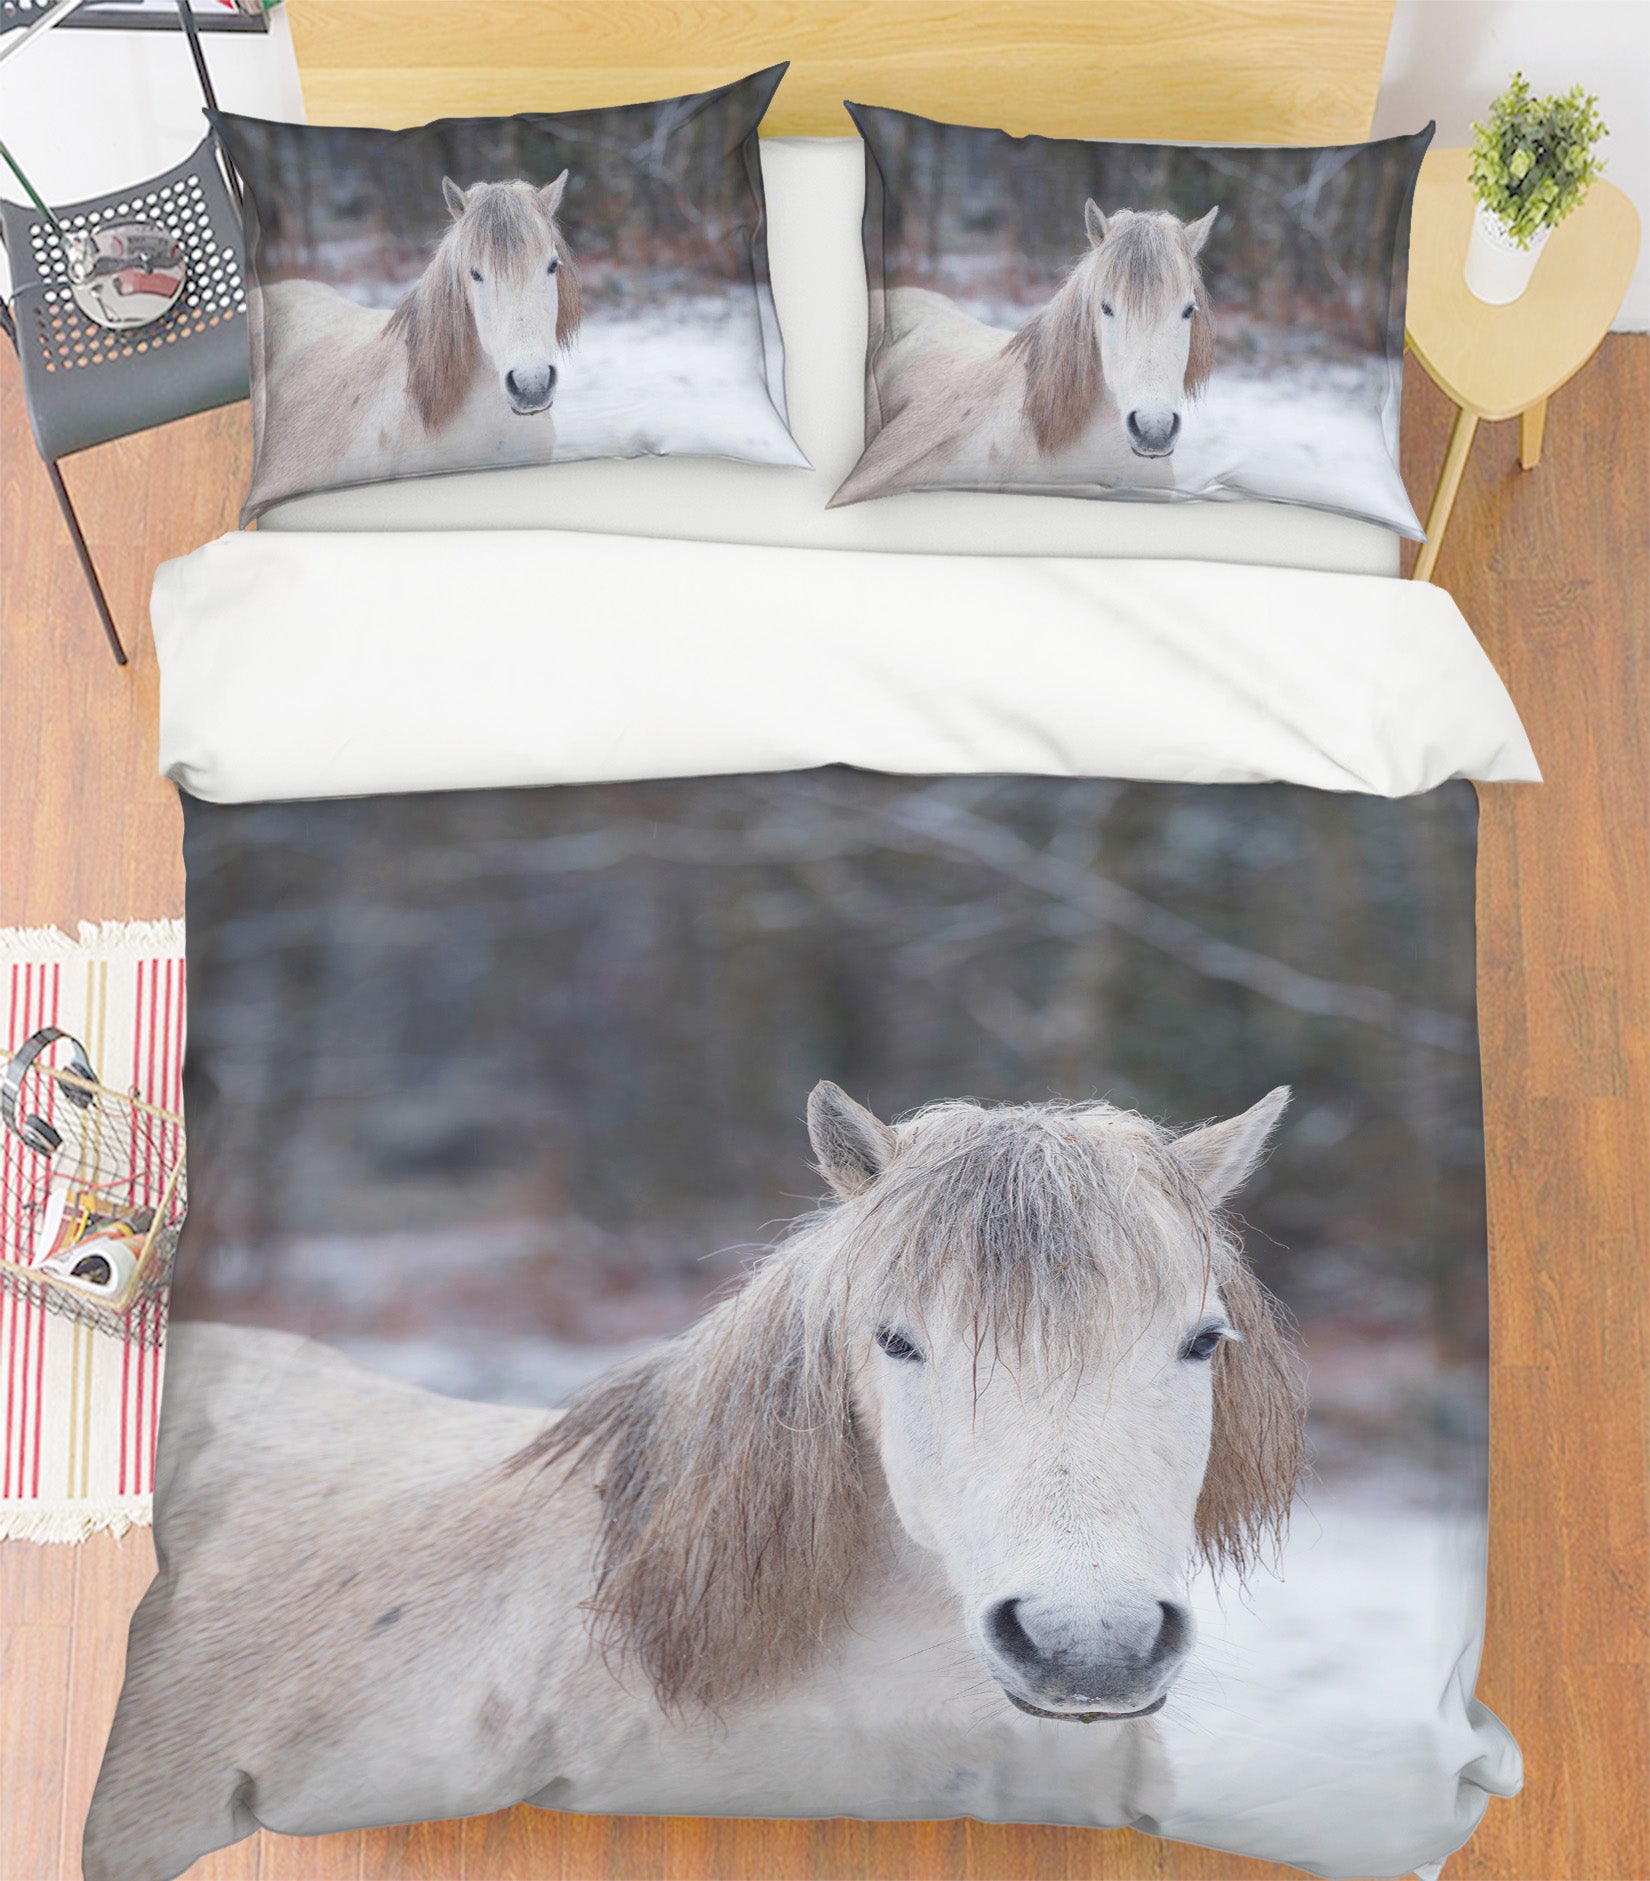 3D White Horse 7178 Assaf Frank Bedding Bed Pillowcases Quilt Cover Duvet Cover